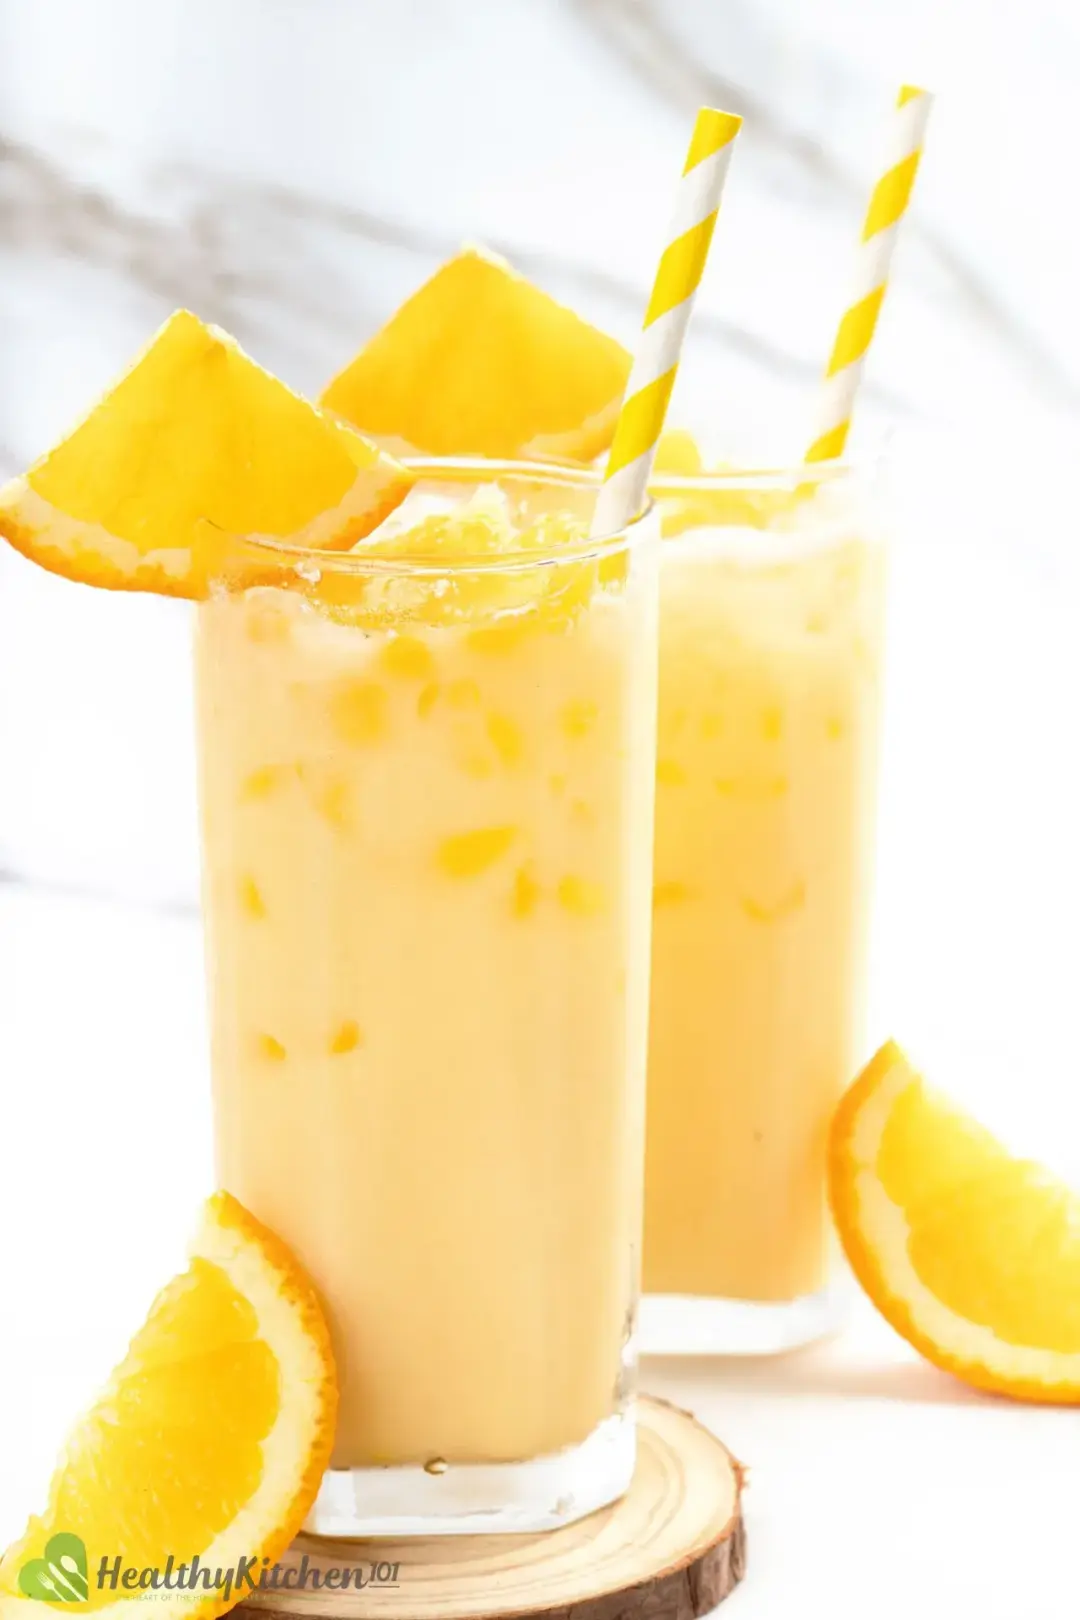 Milk And Orange Juice Recipe Healthykitchen101 1